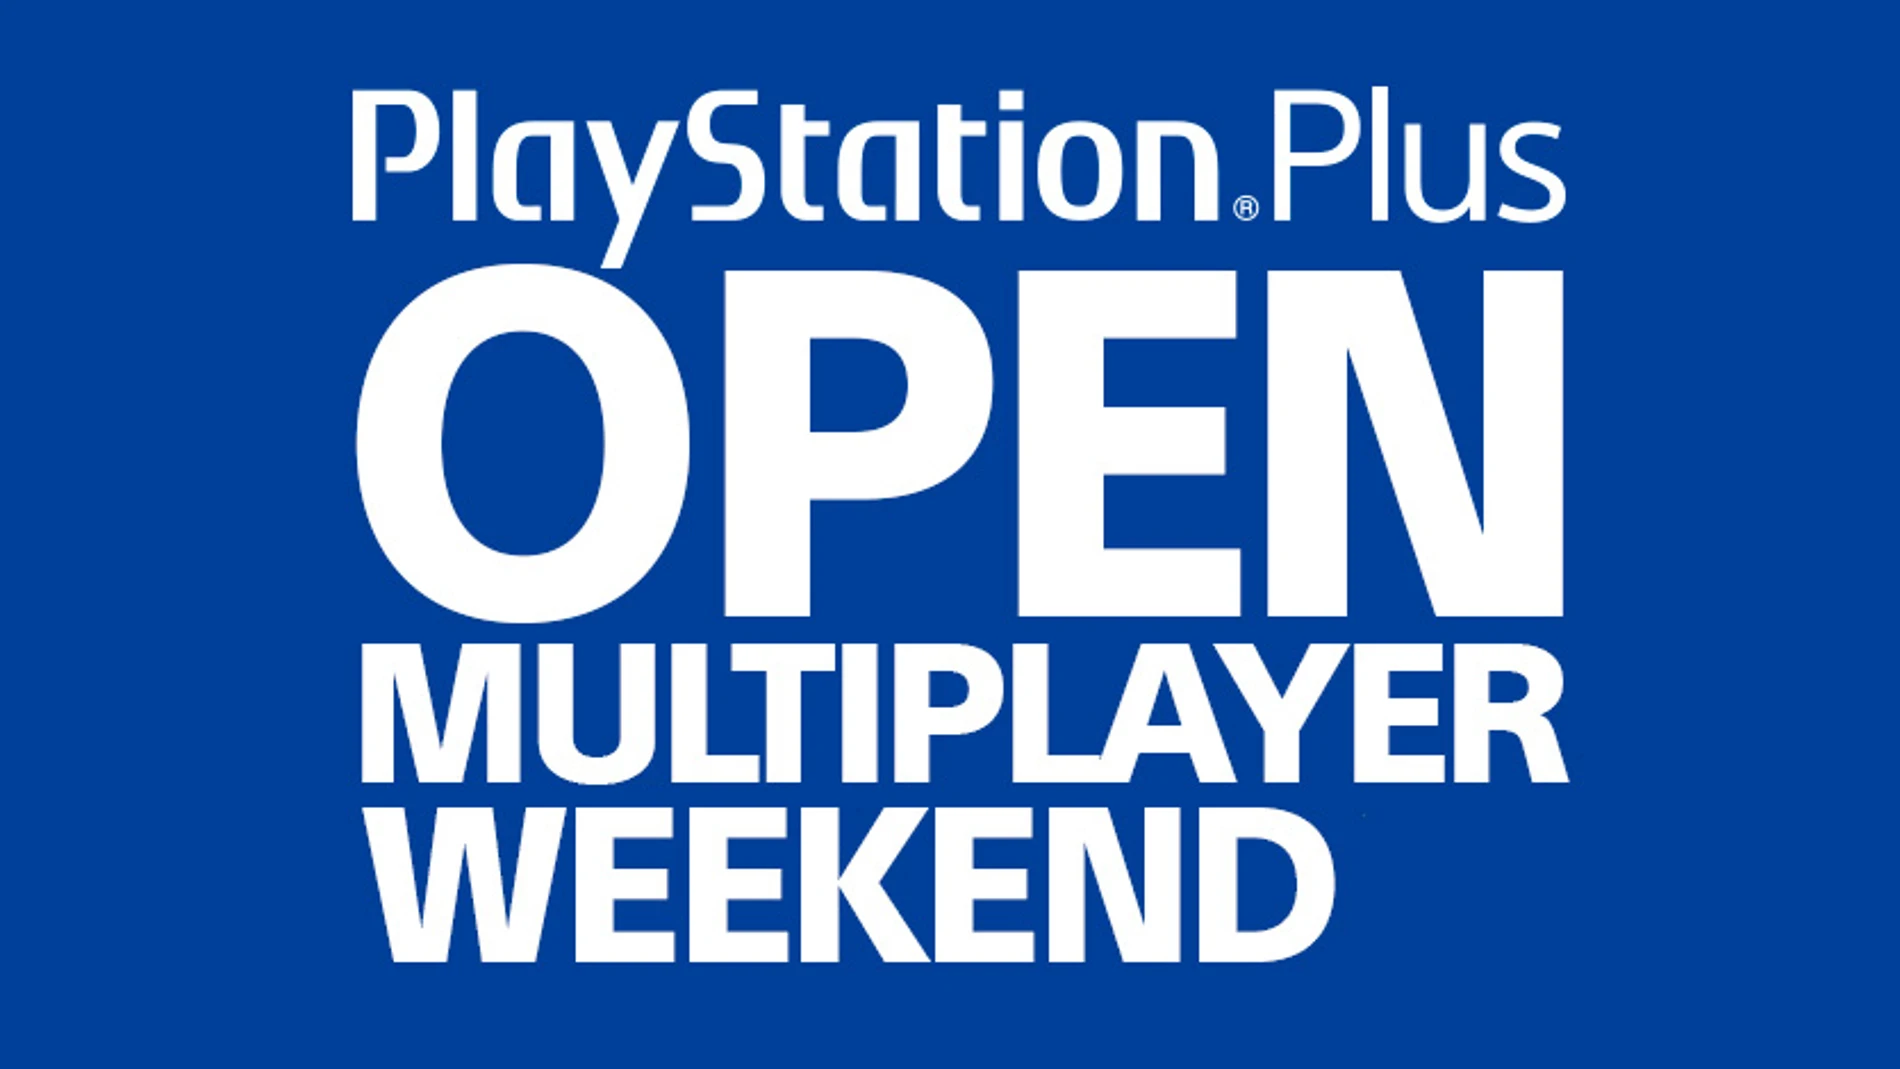 Sony ofrece multijugador en línea gratuito para PS4 durante el fin de semana